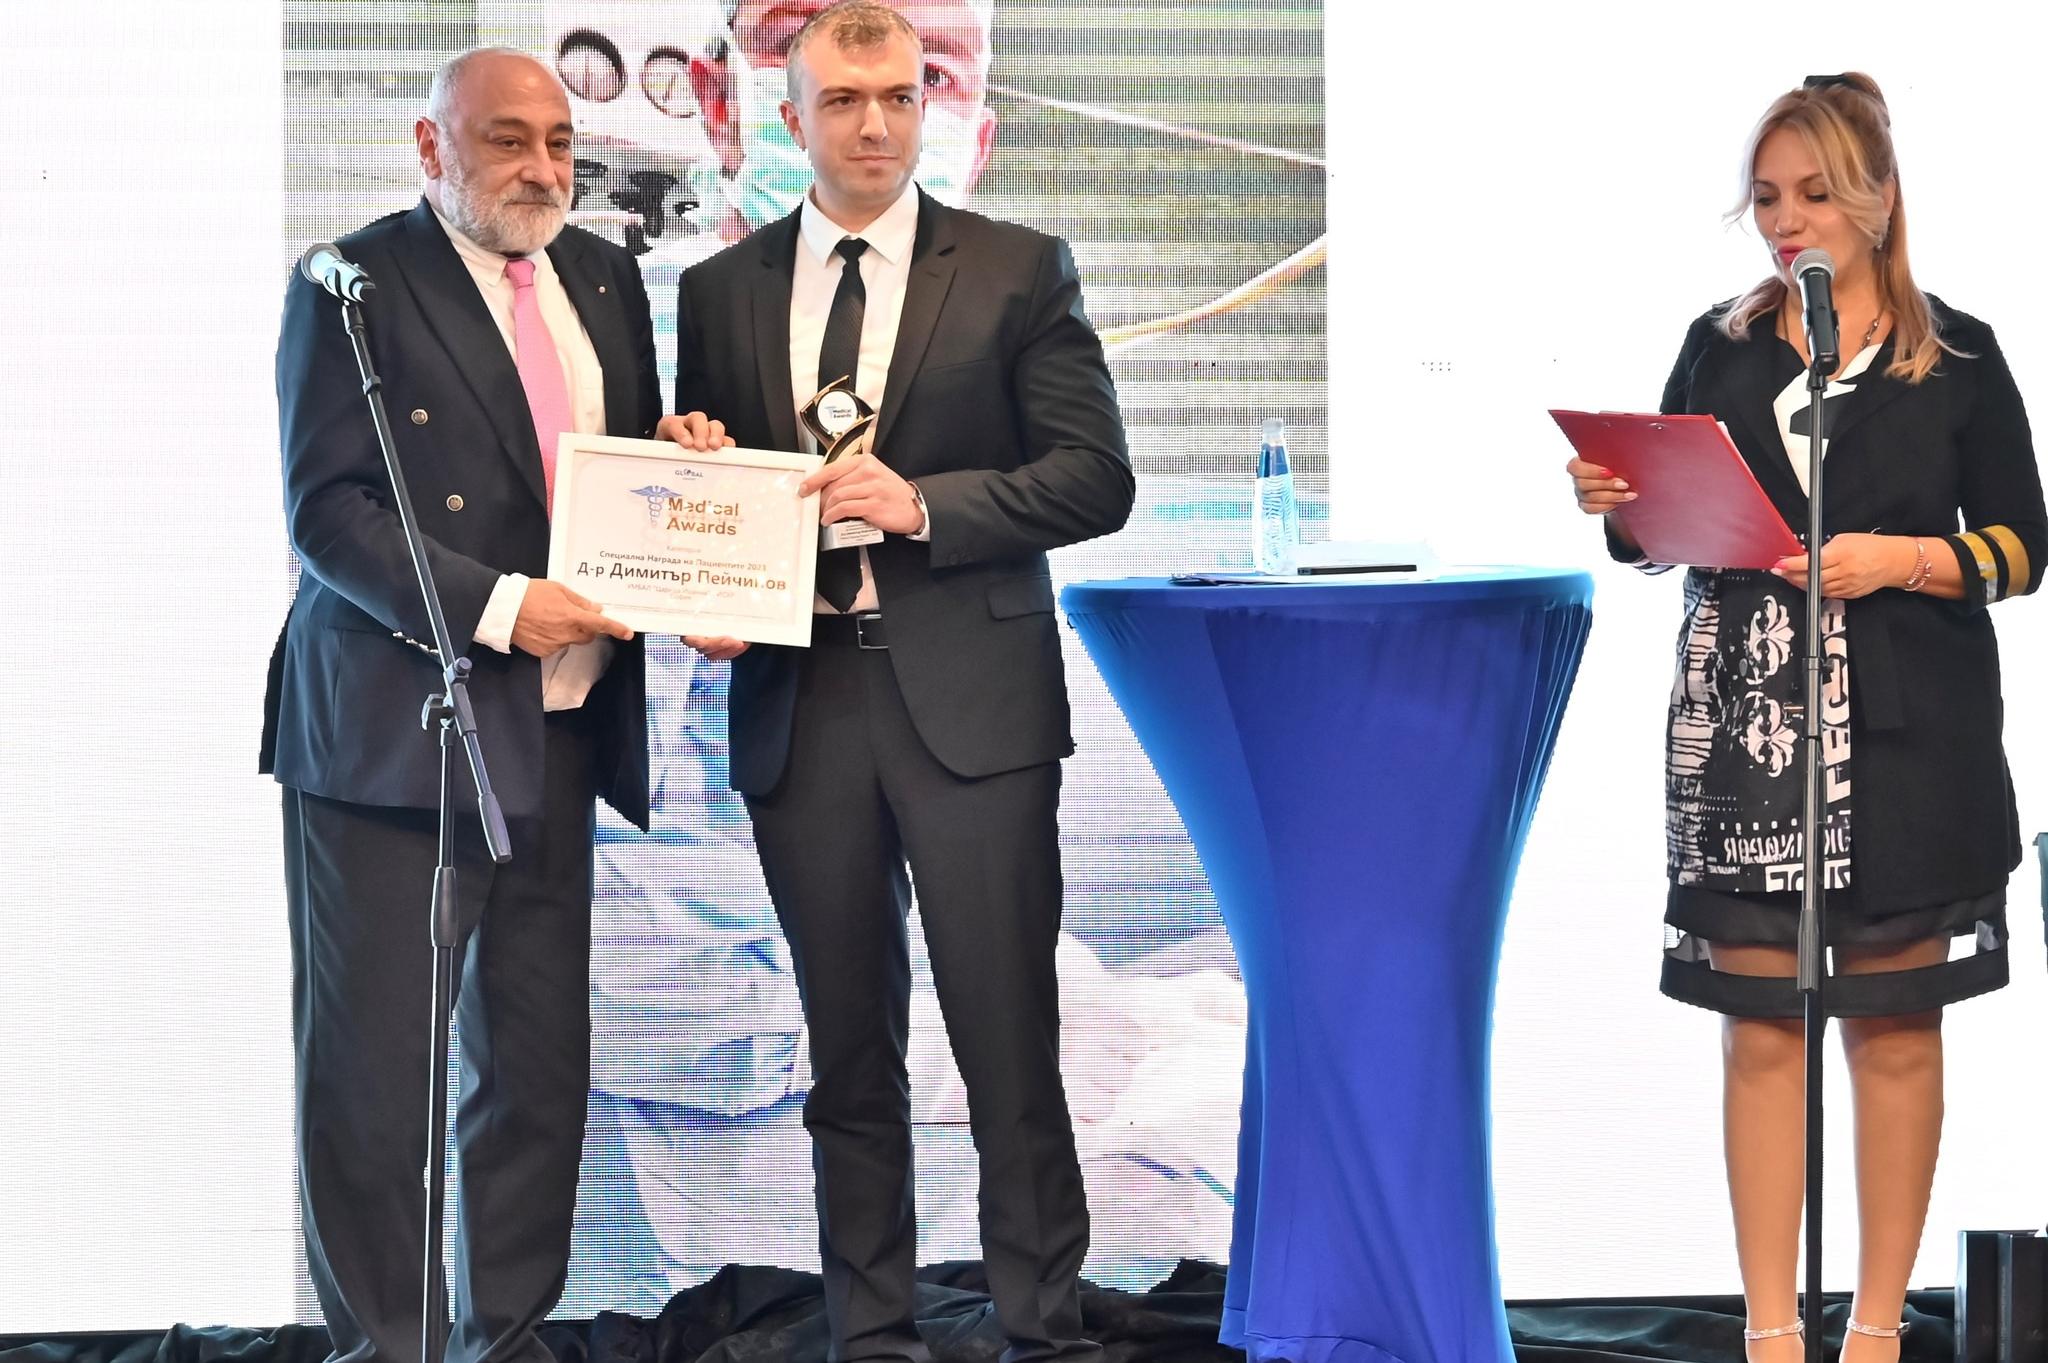 Д-р Д. Пейчинов от ИСУЛ получи Специалната награда на Пациентите на Балкана